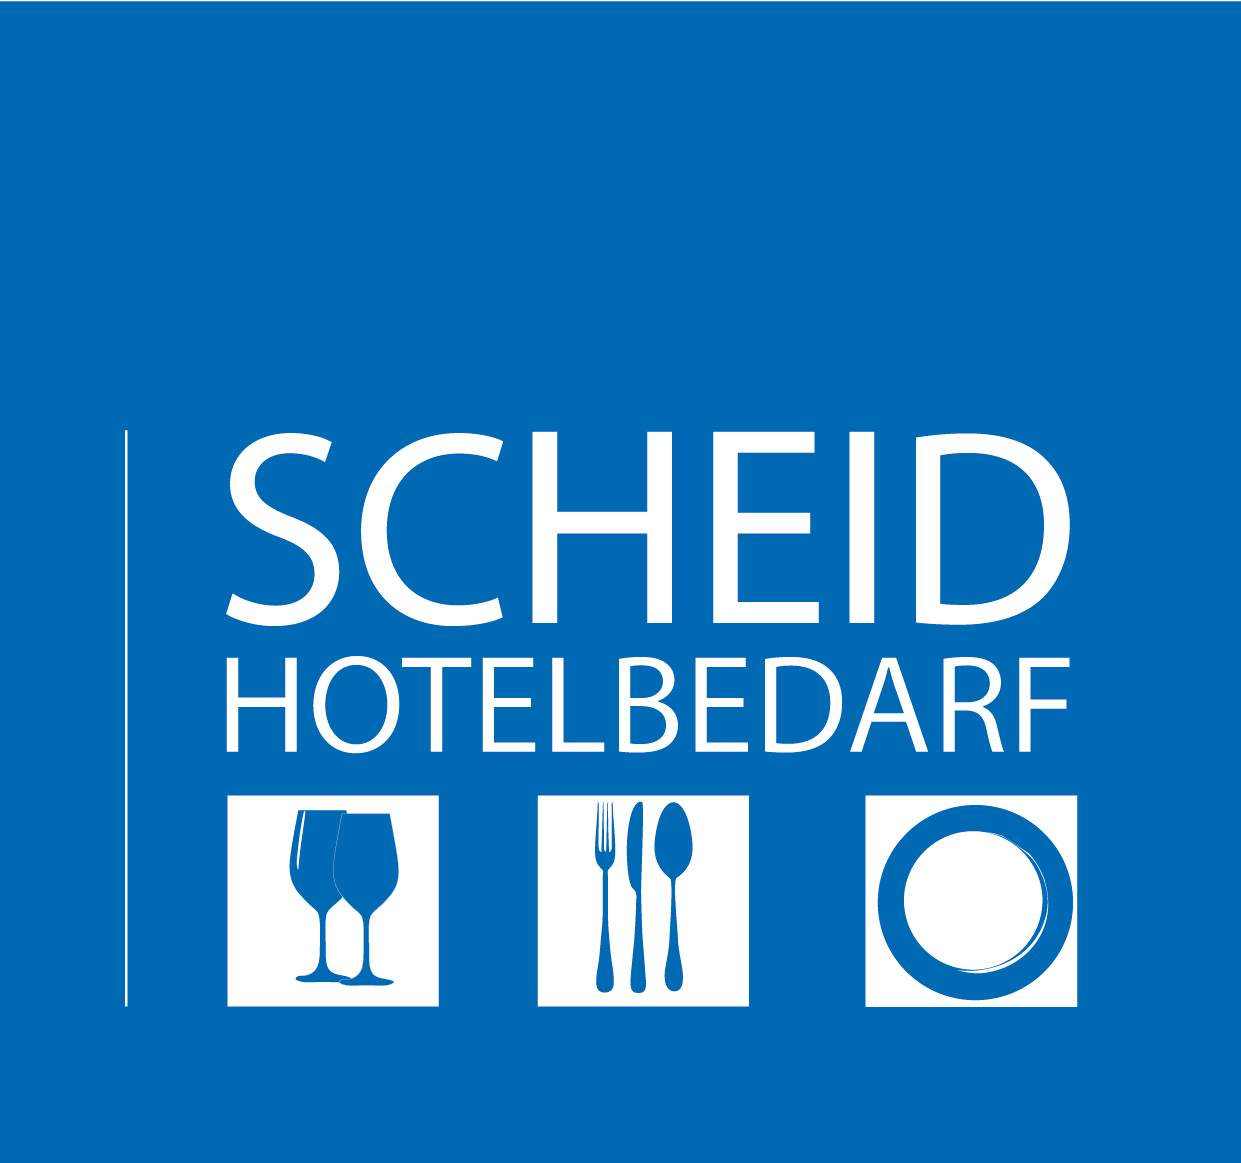 Scheid Hotelbedarf Logo negativ blau